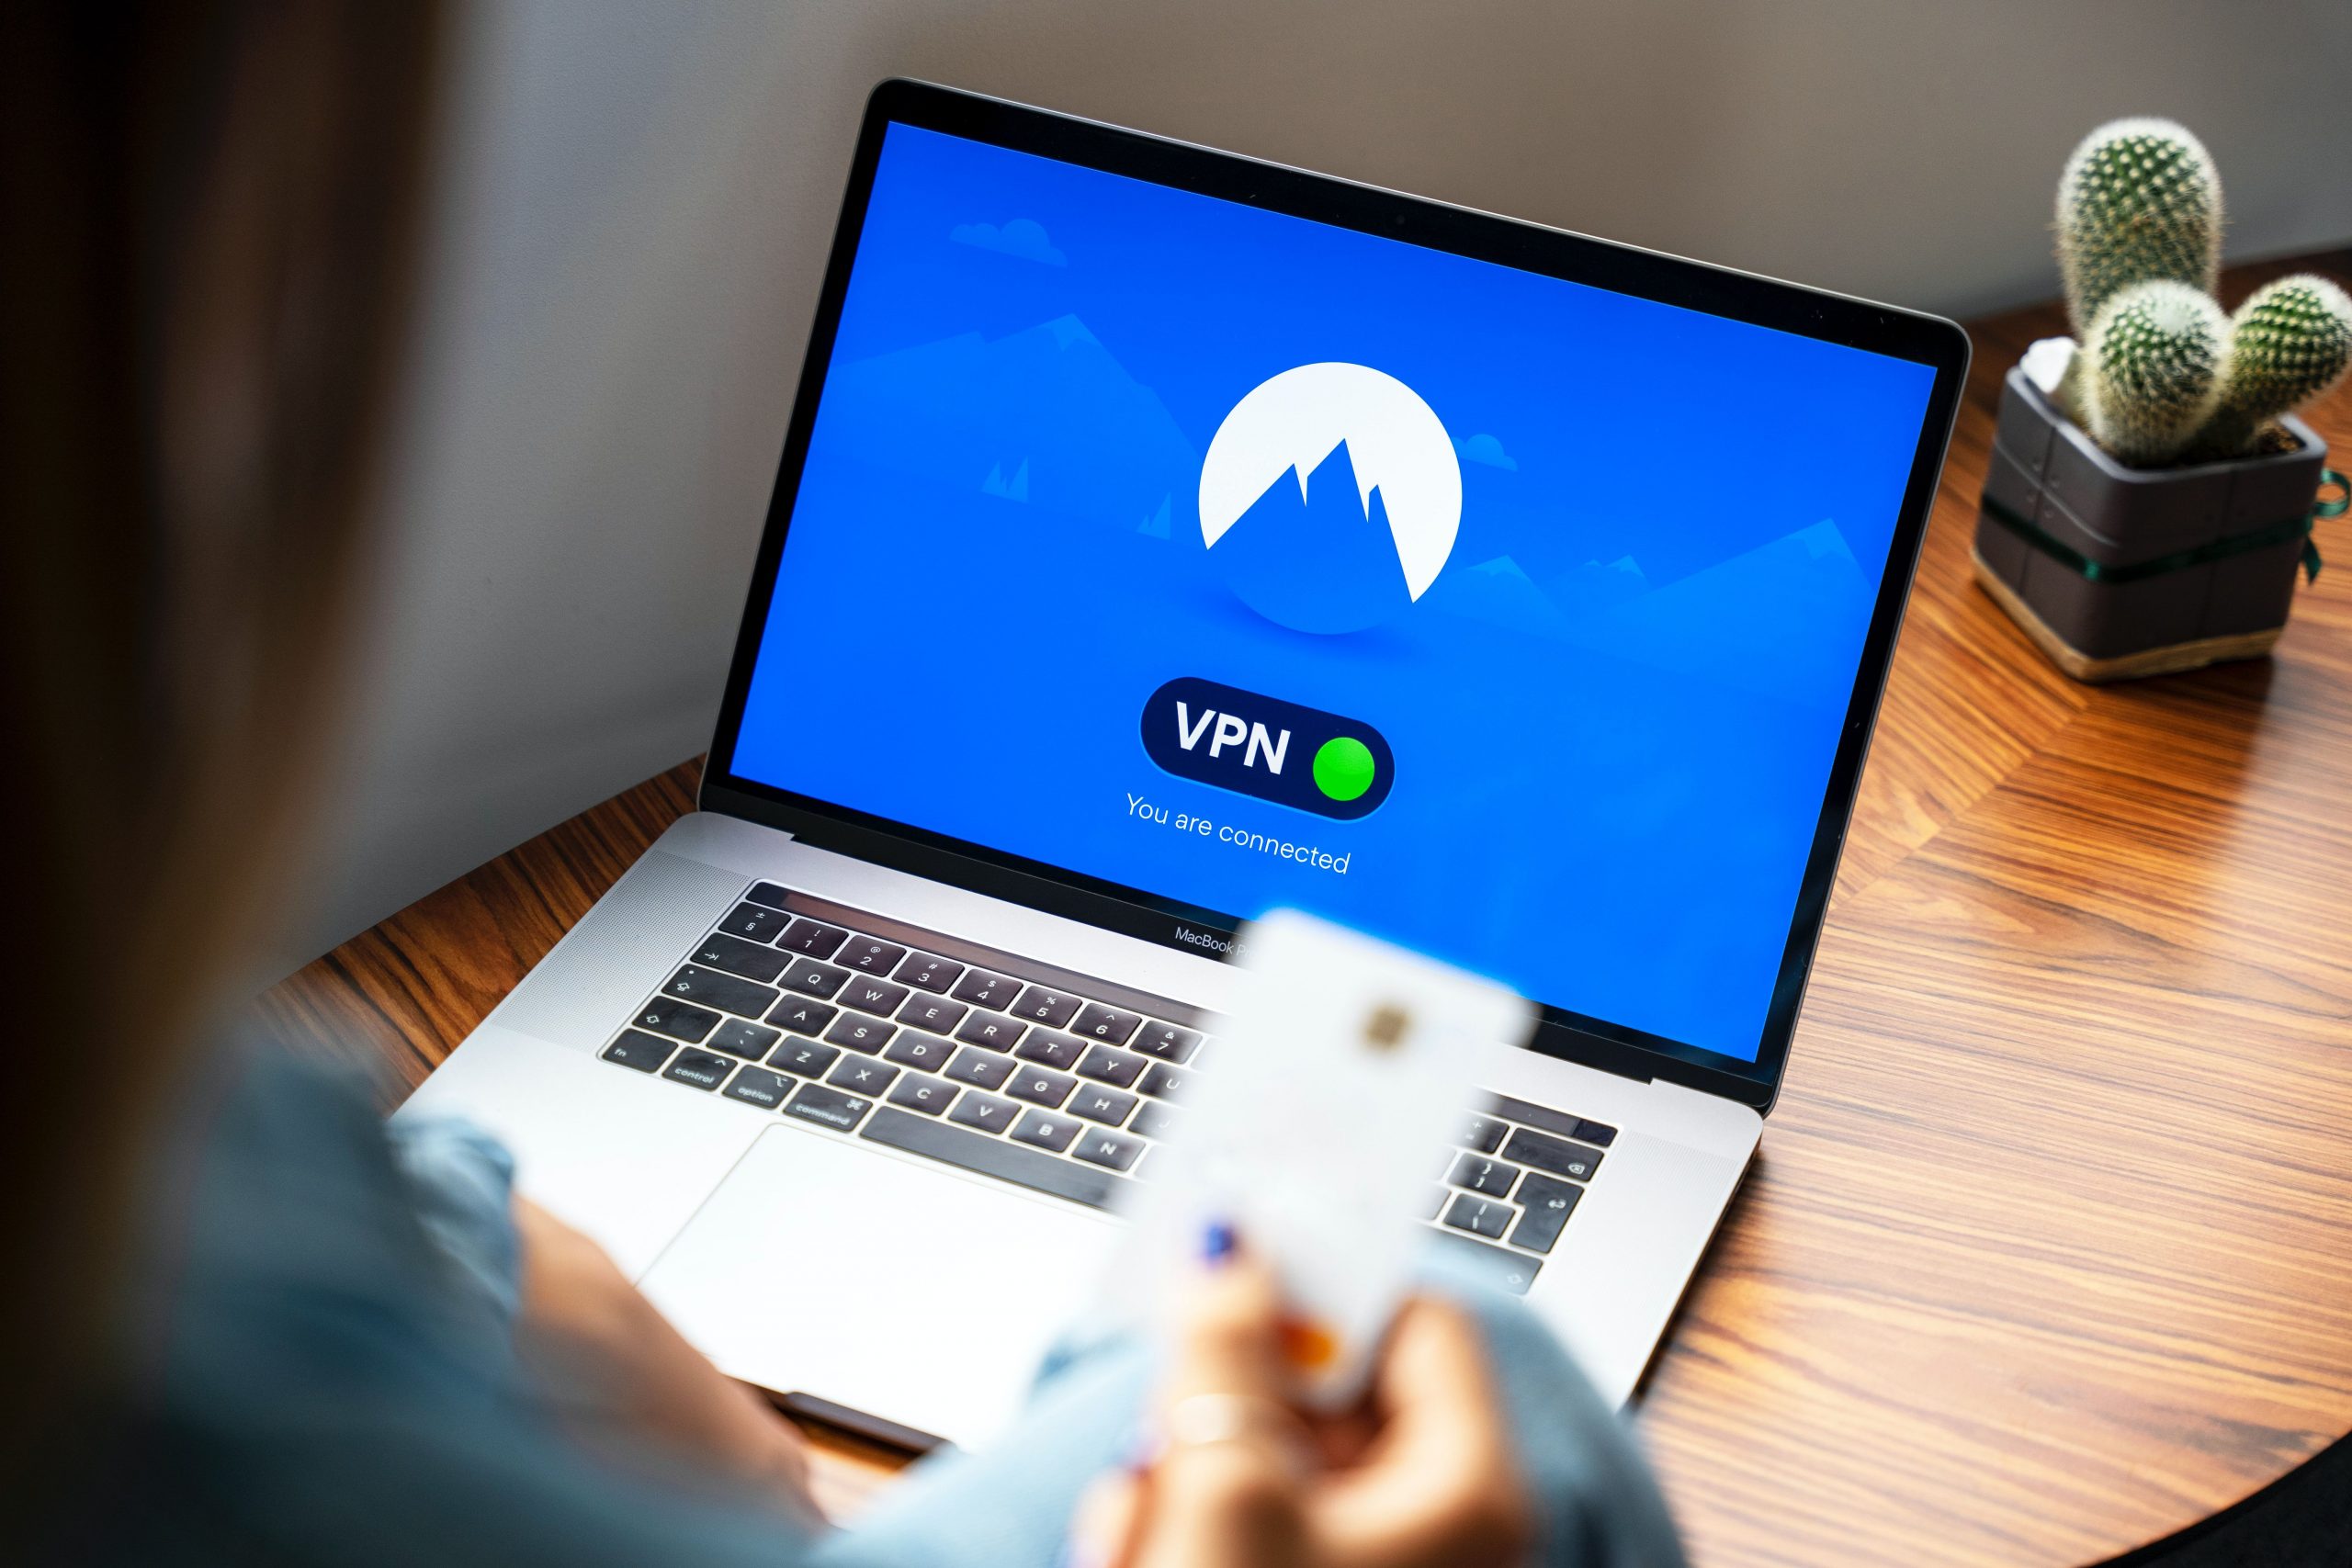 Democrat lawmakers push FTC to regulate VPN providers